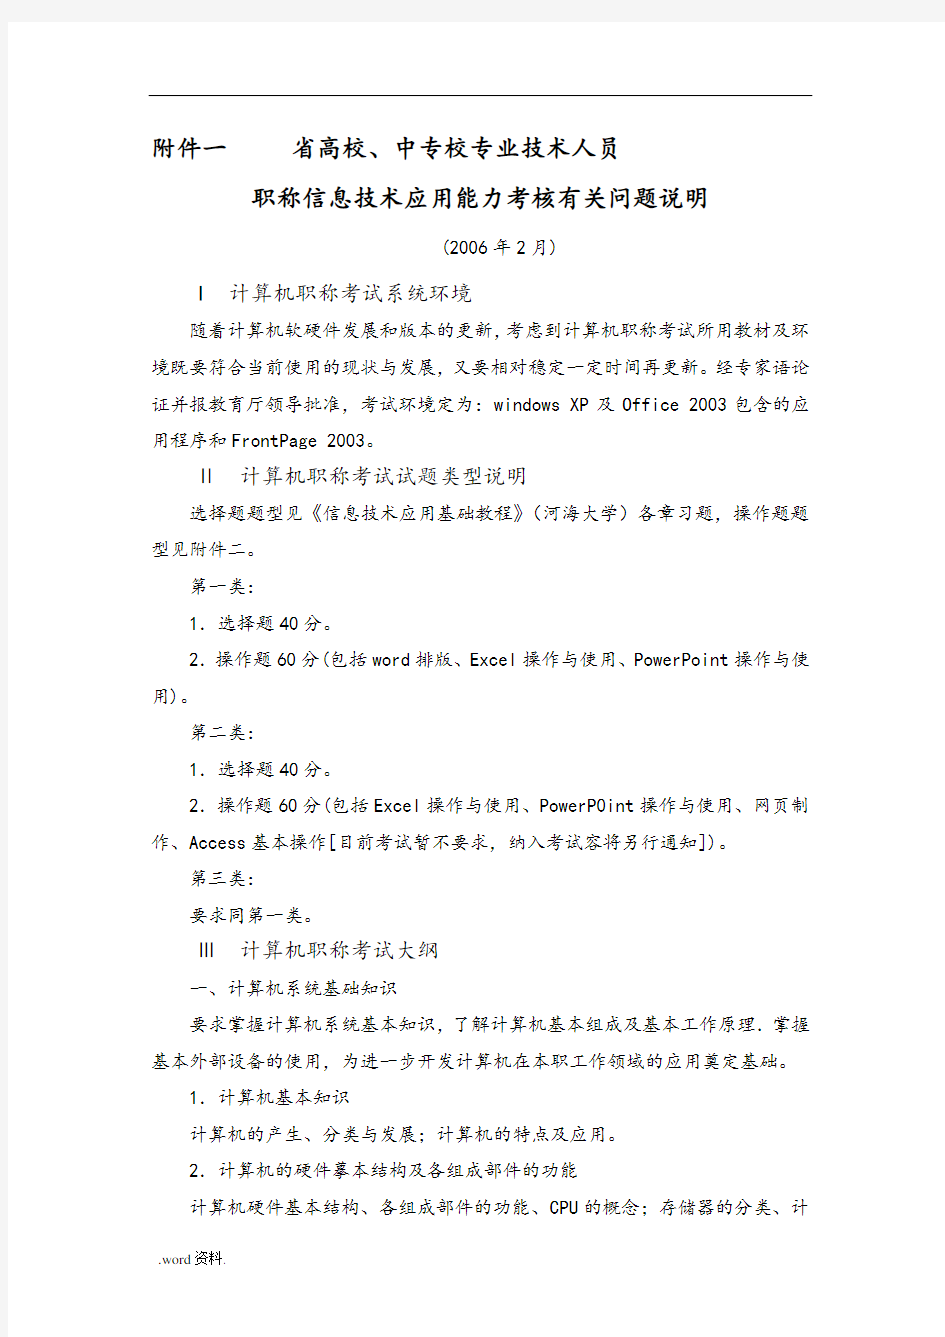 江苏省高校、中专校专业技术人员职称信息技术应用能力考核资料全